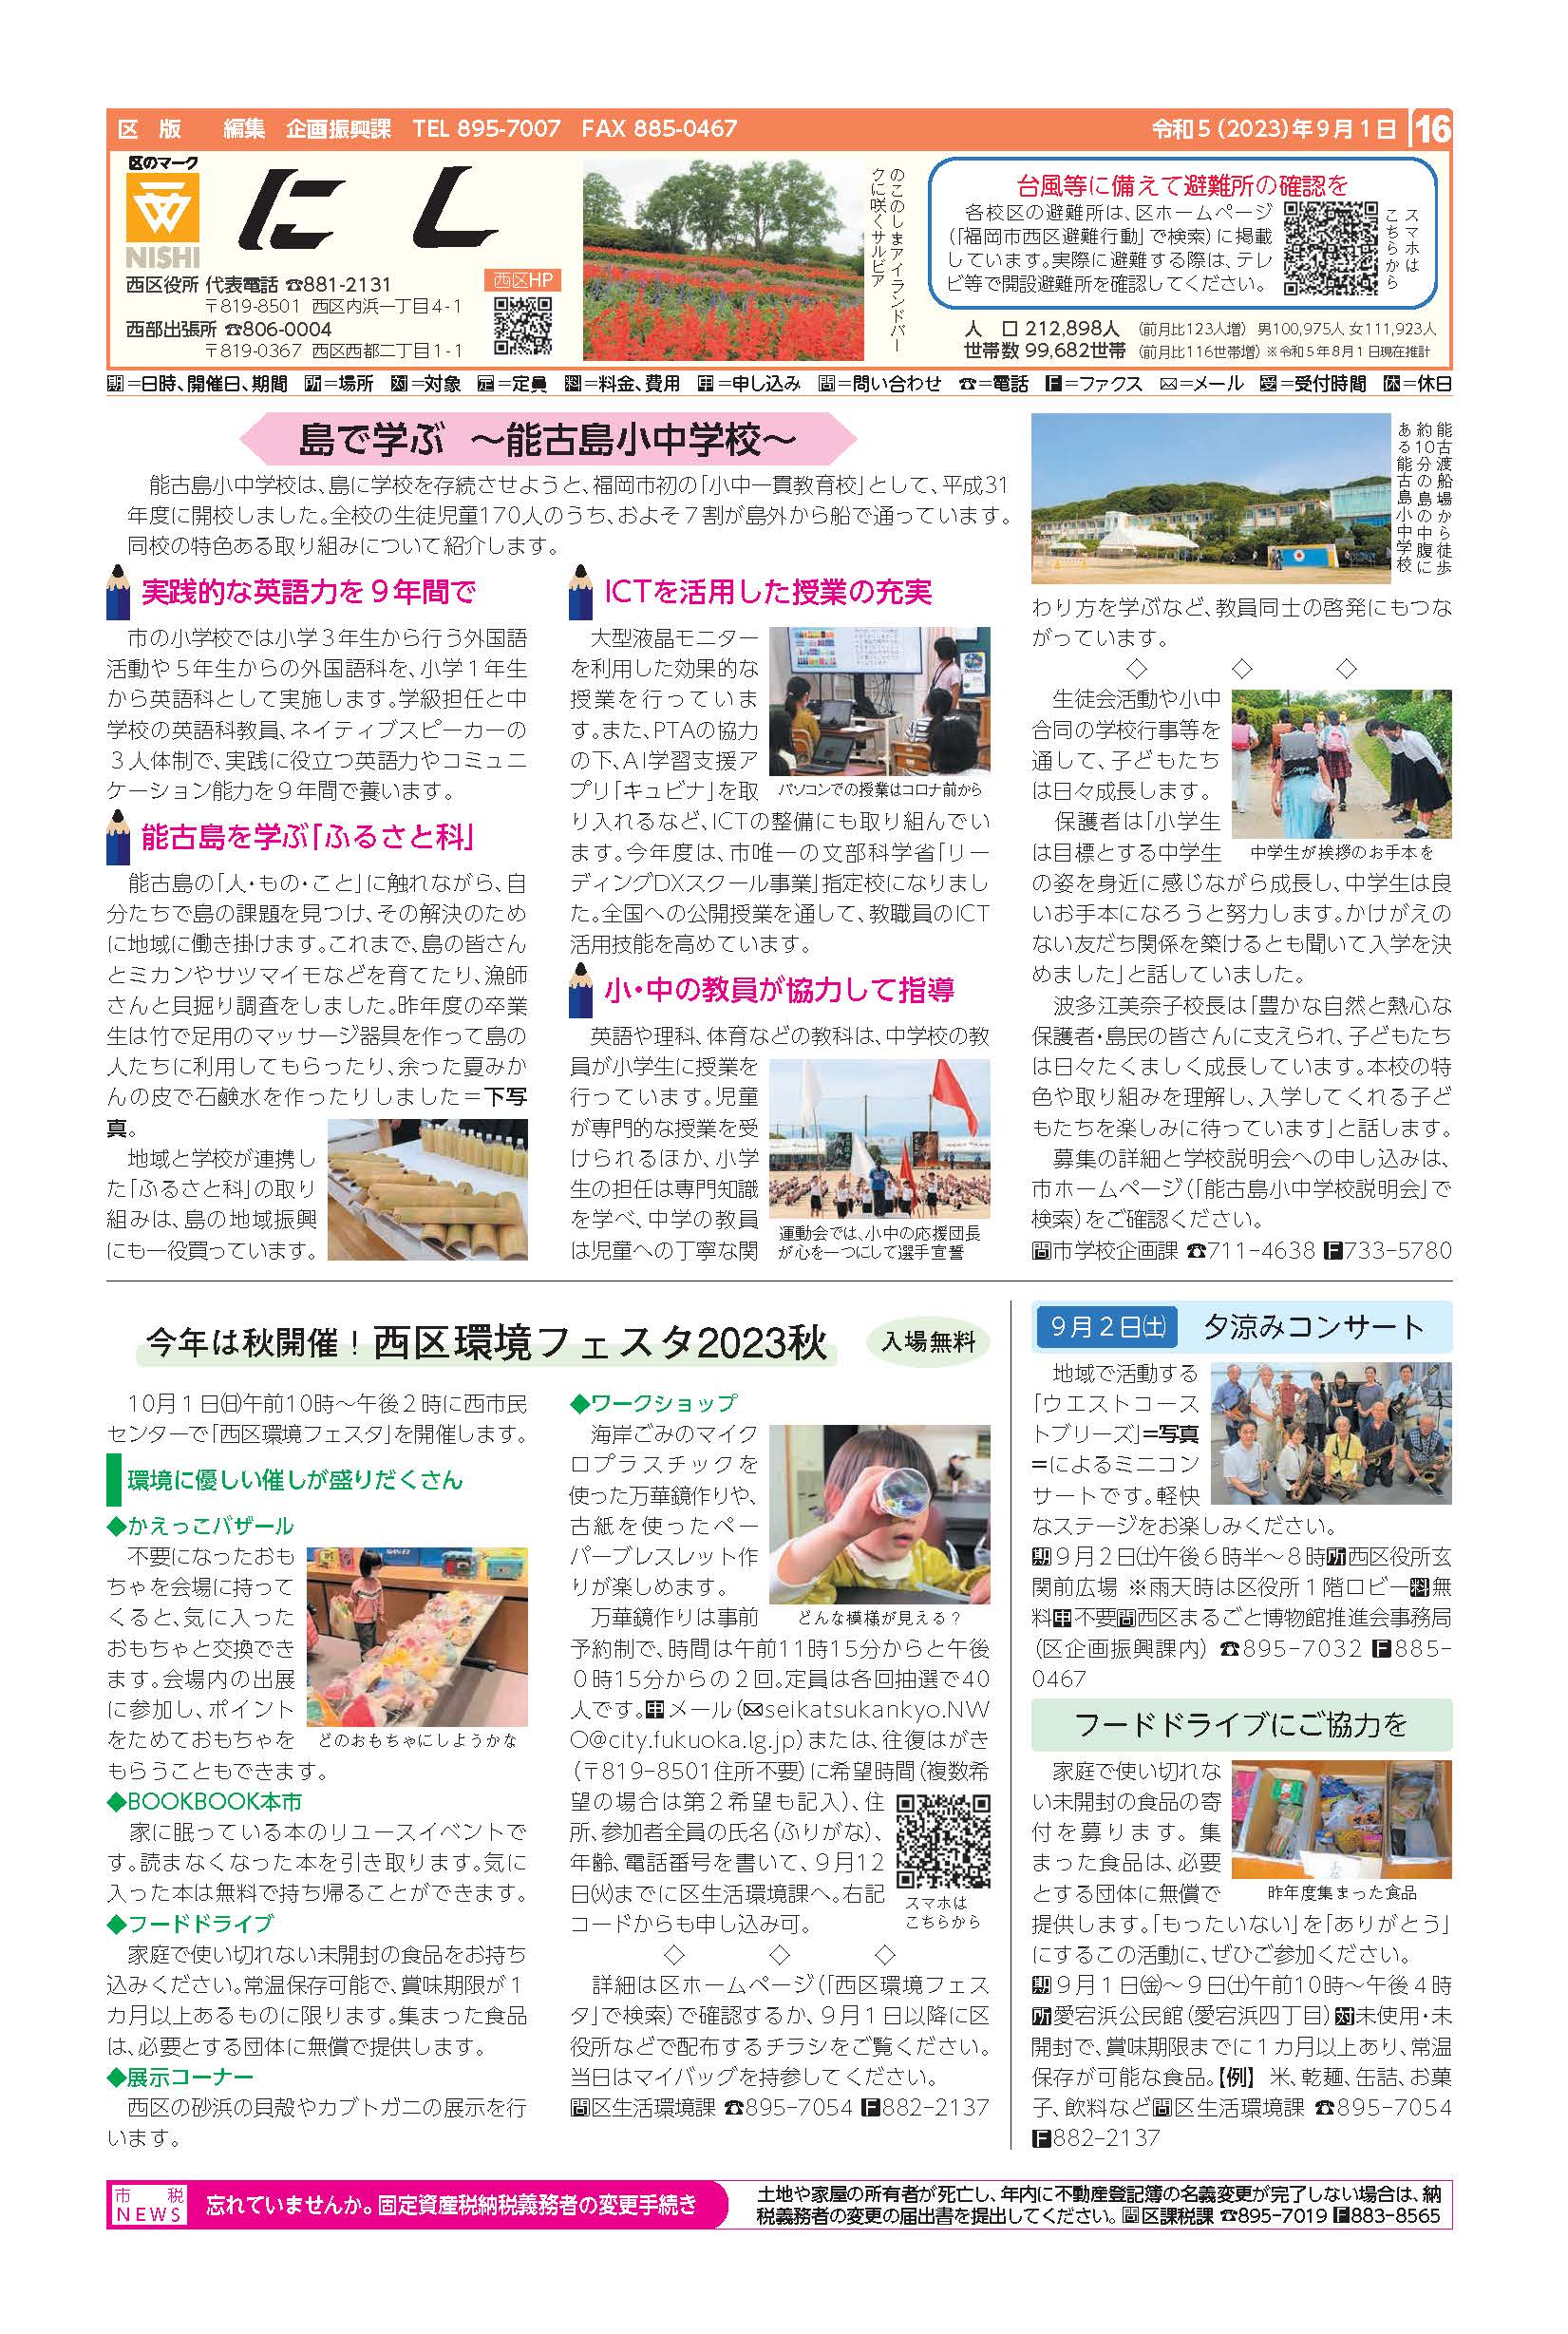 福岡市政だより2023年9月1日号の西区版の紙面画像